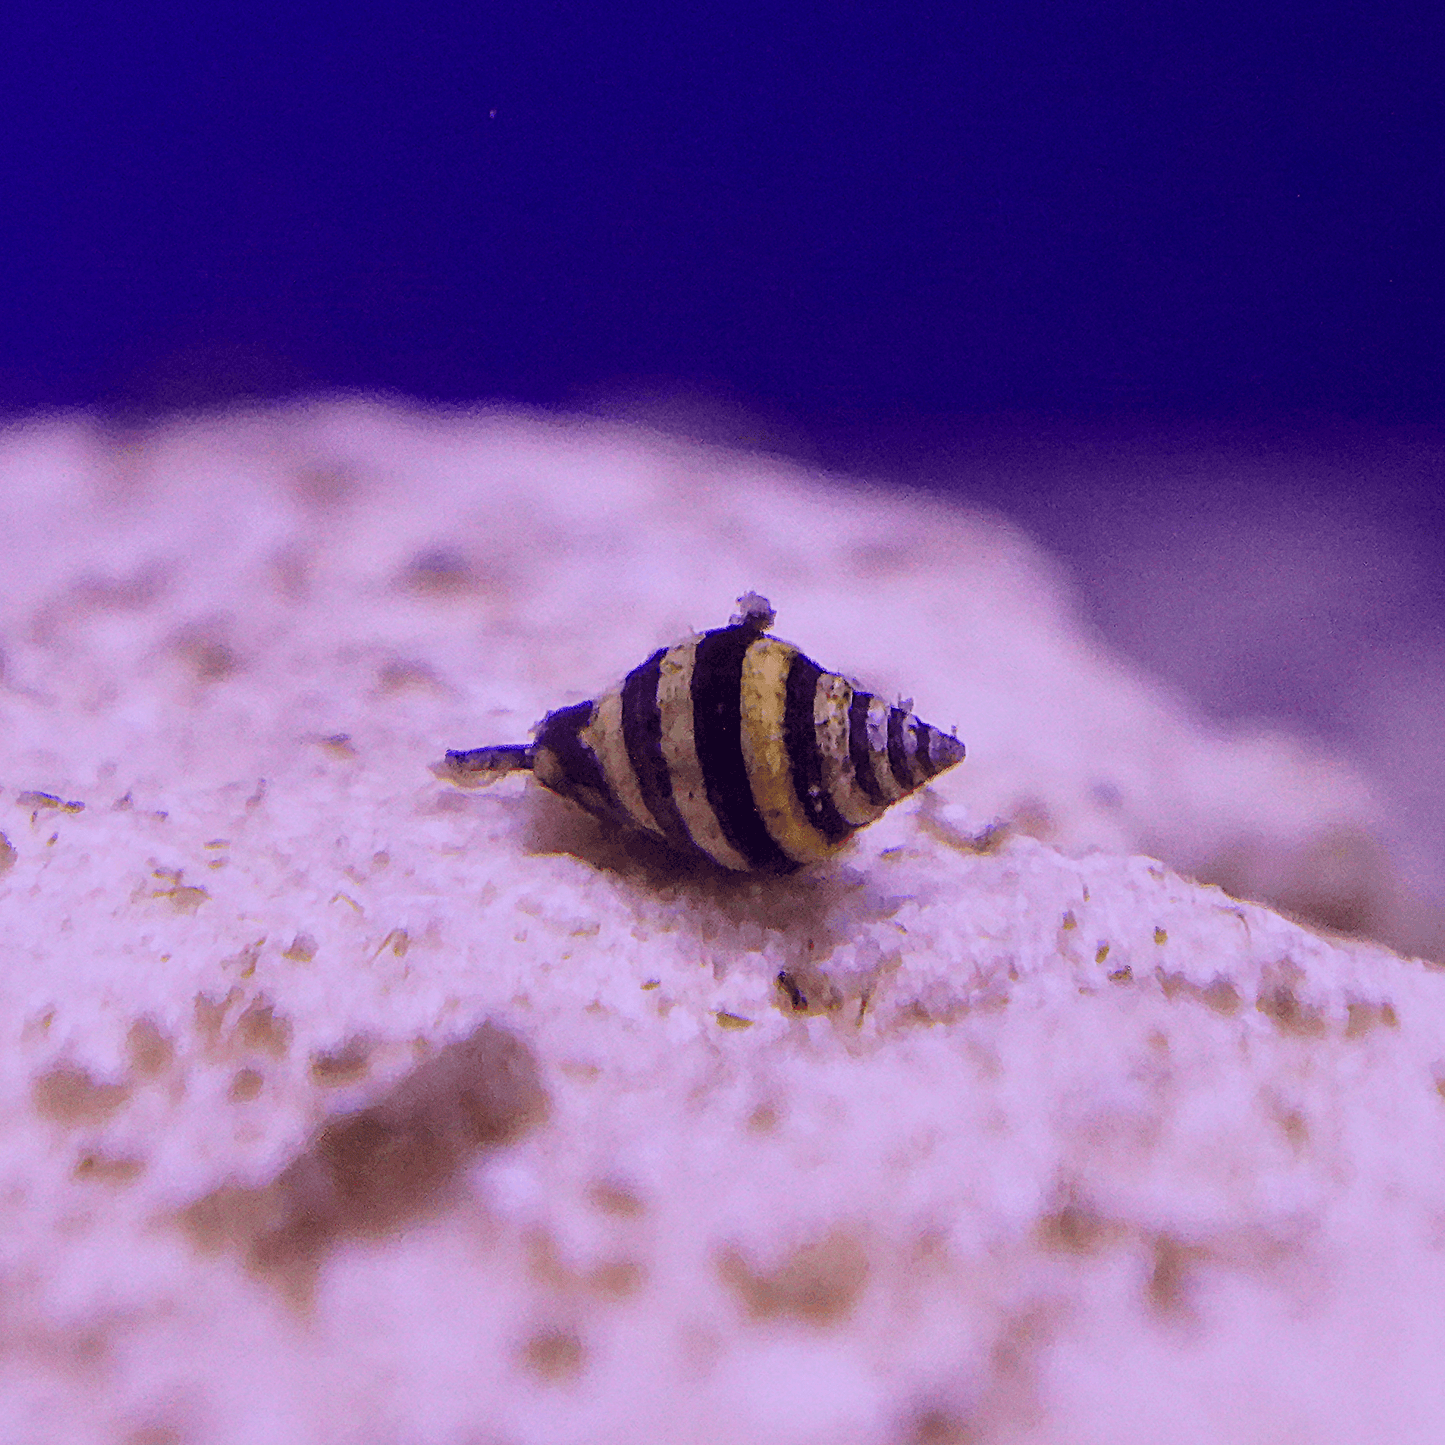 Bumble Bee Snail - Koral King